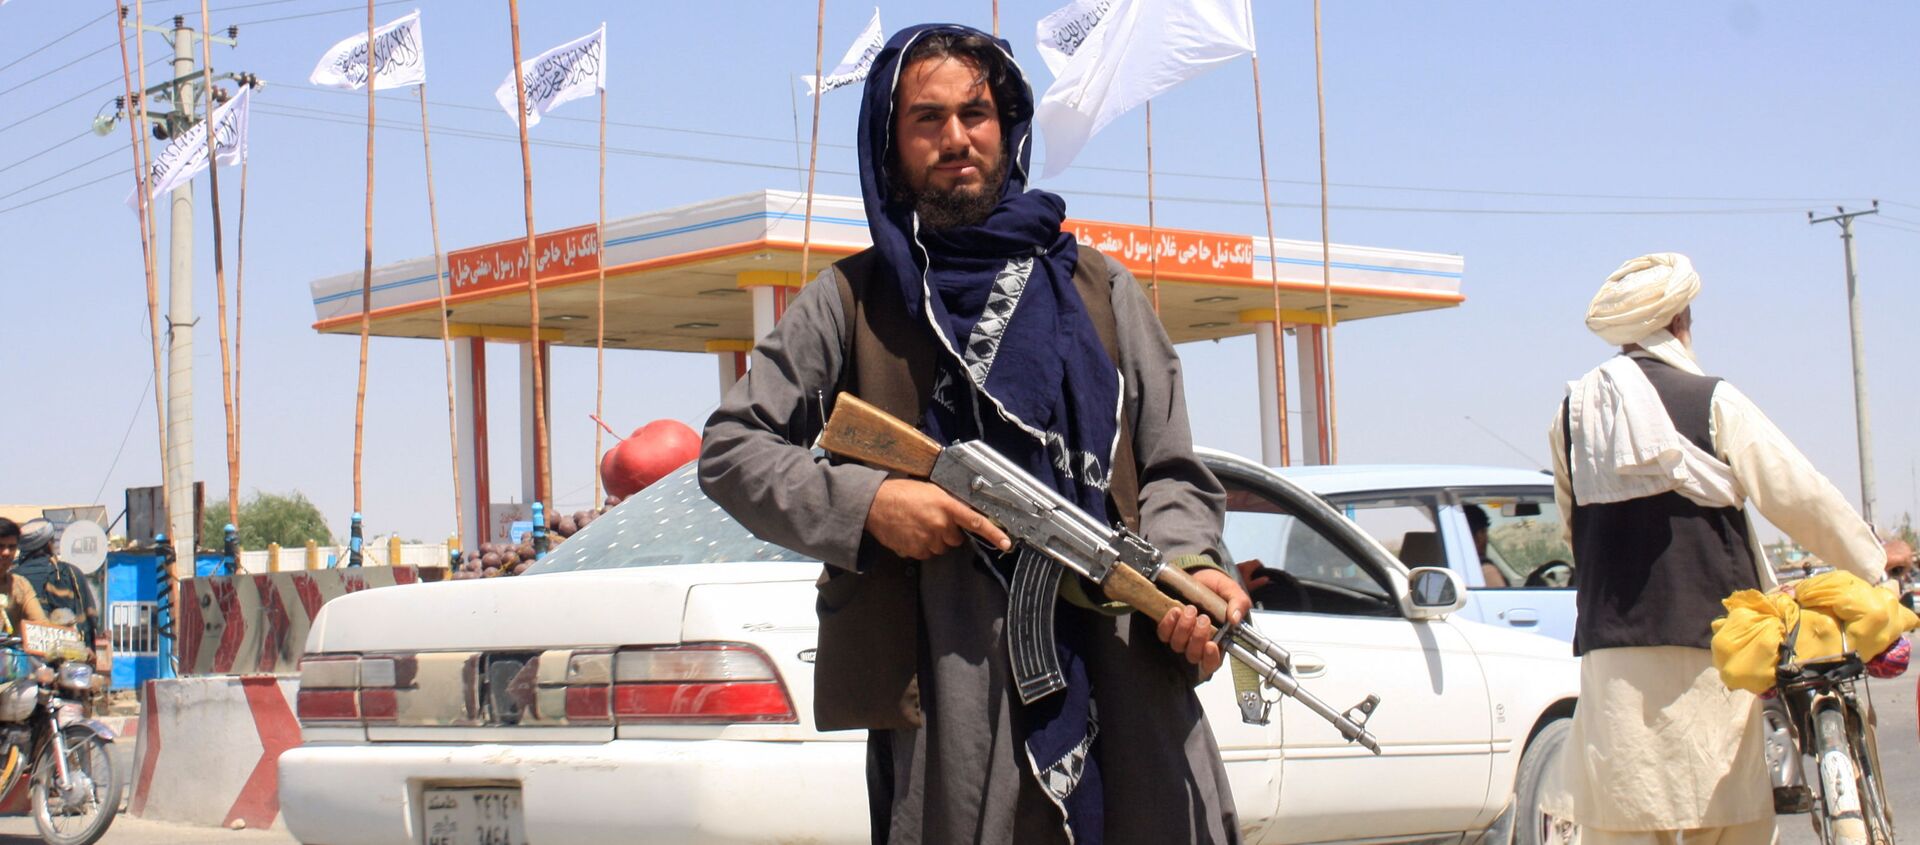 Một chiến binh Taliban đứng nhìn khi anh ta đứng tại thành phố Ghazni, Afghanistan ngày 14 tháng 8 năm 2021. - Sputnik Việt Nam, 1920, 17.08.2021